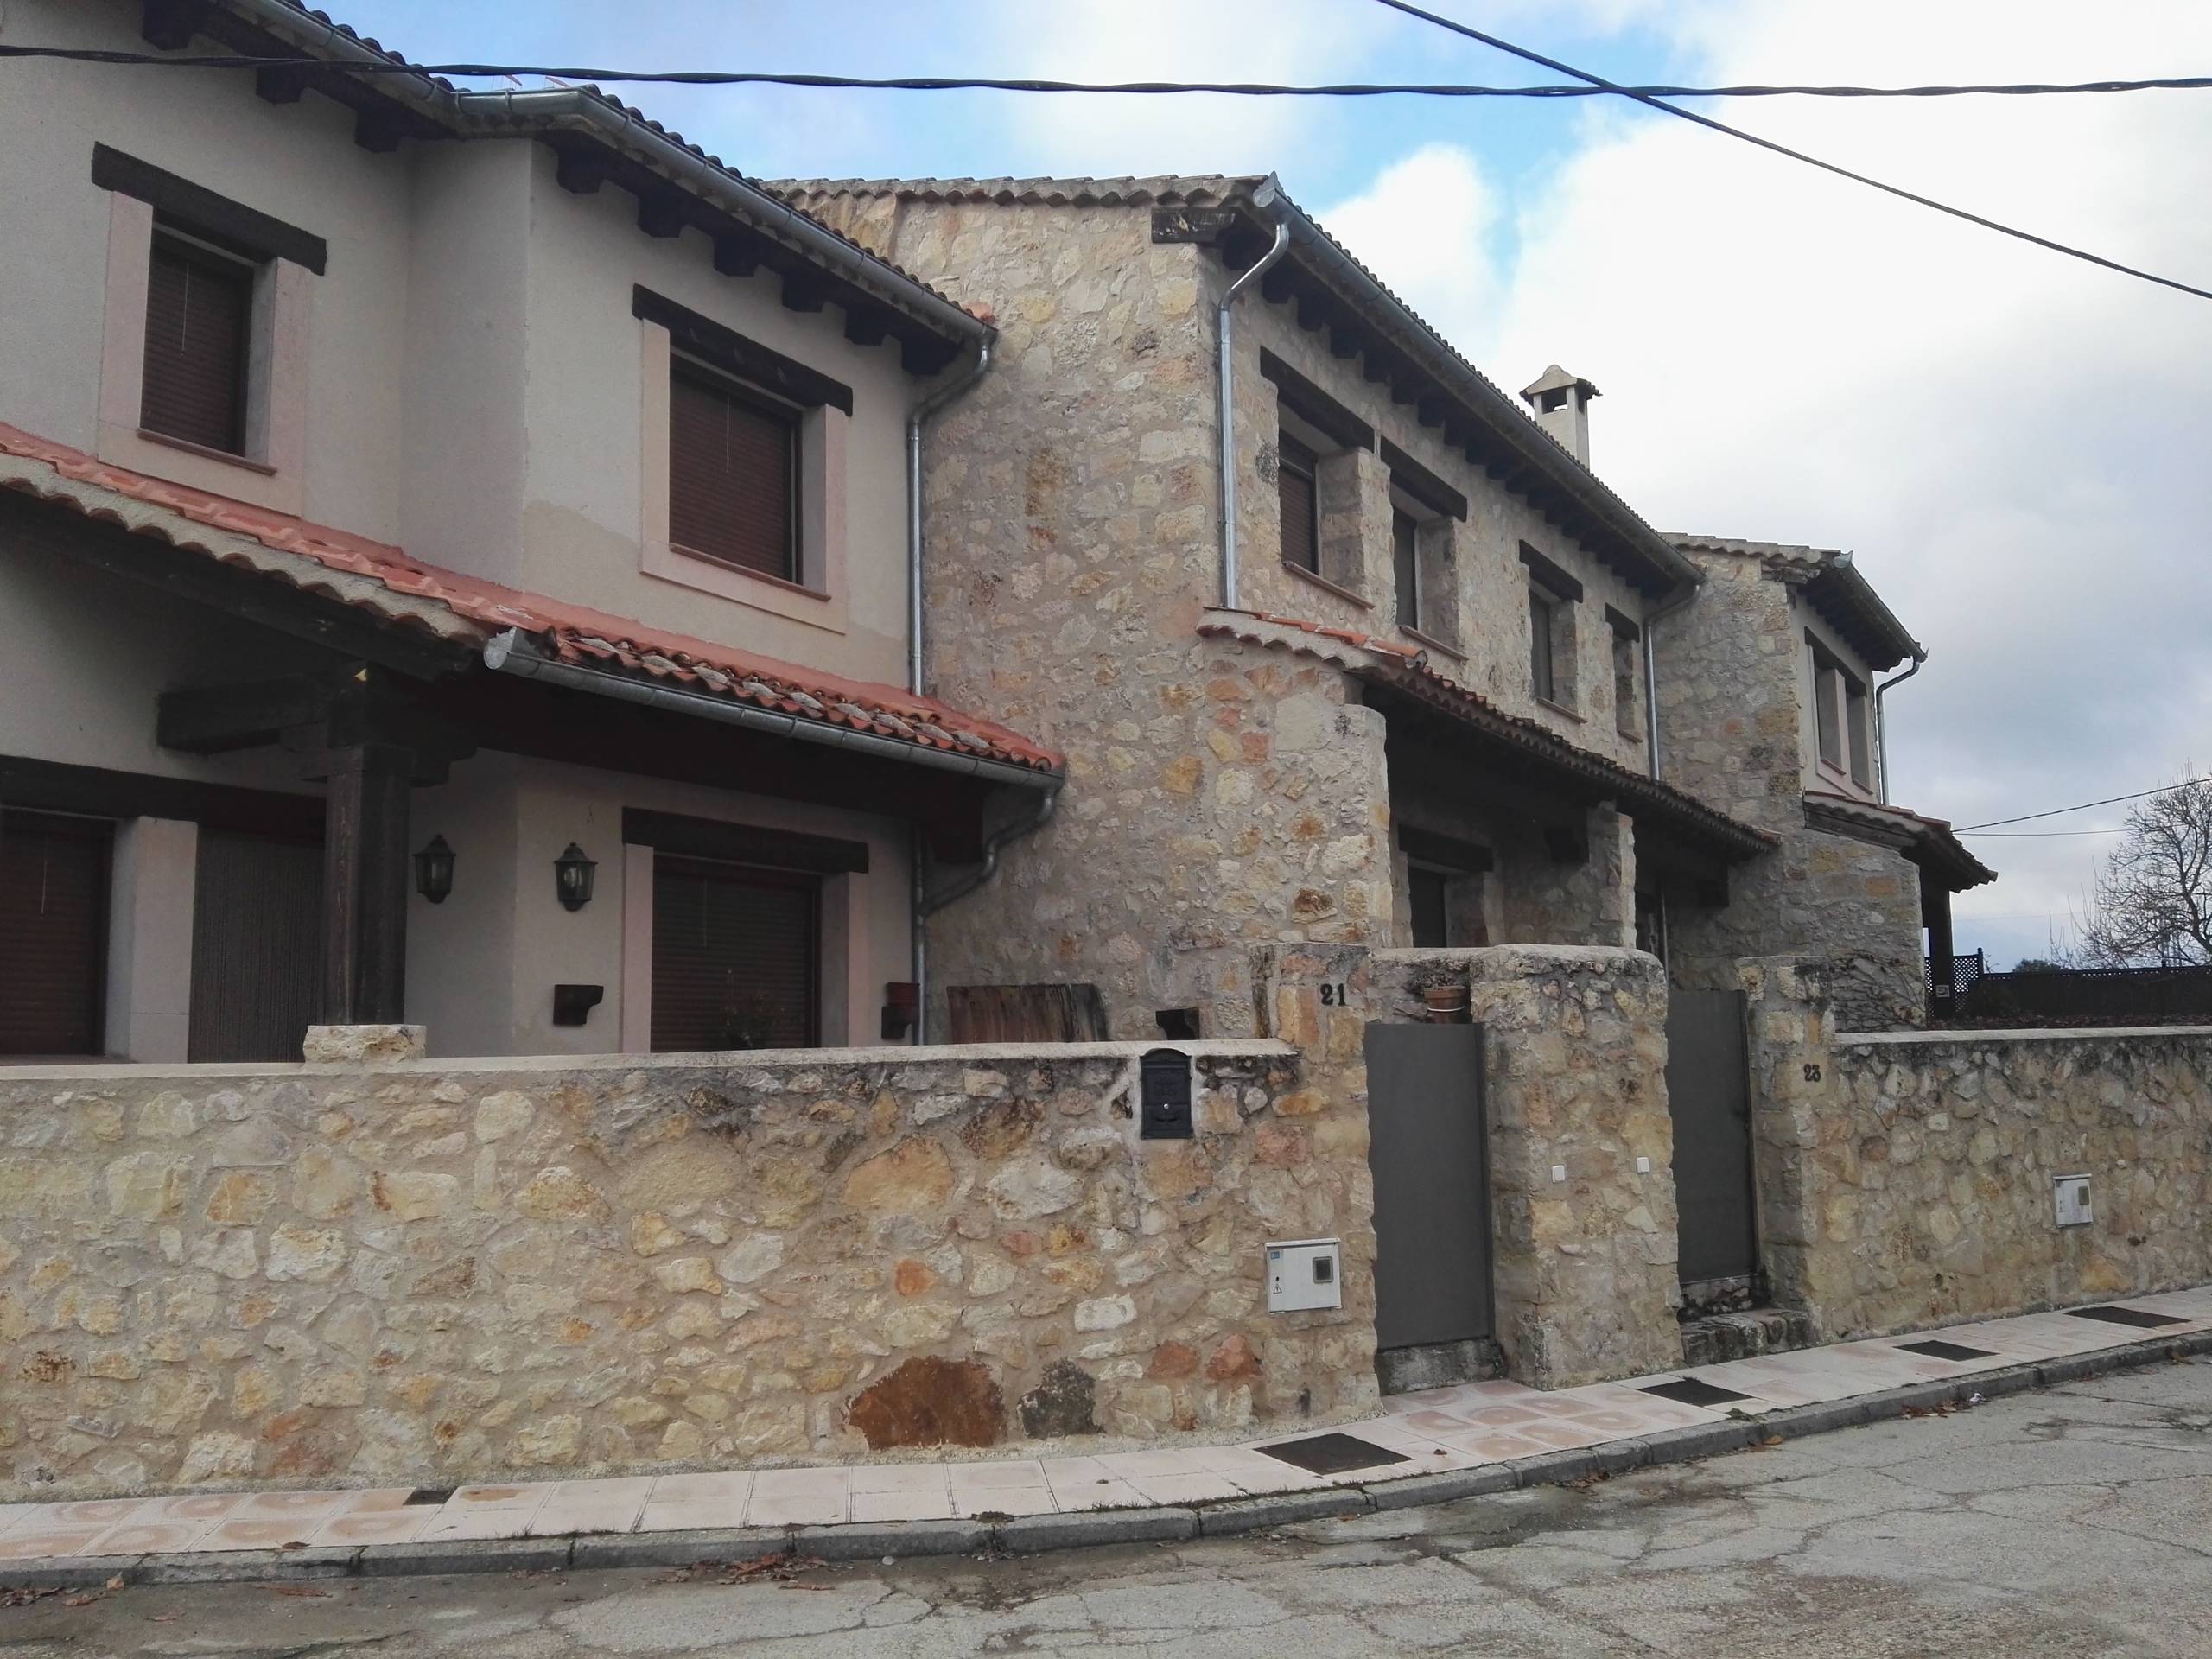 4 viviendas adosadas en Huerta, Segovia